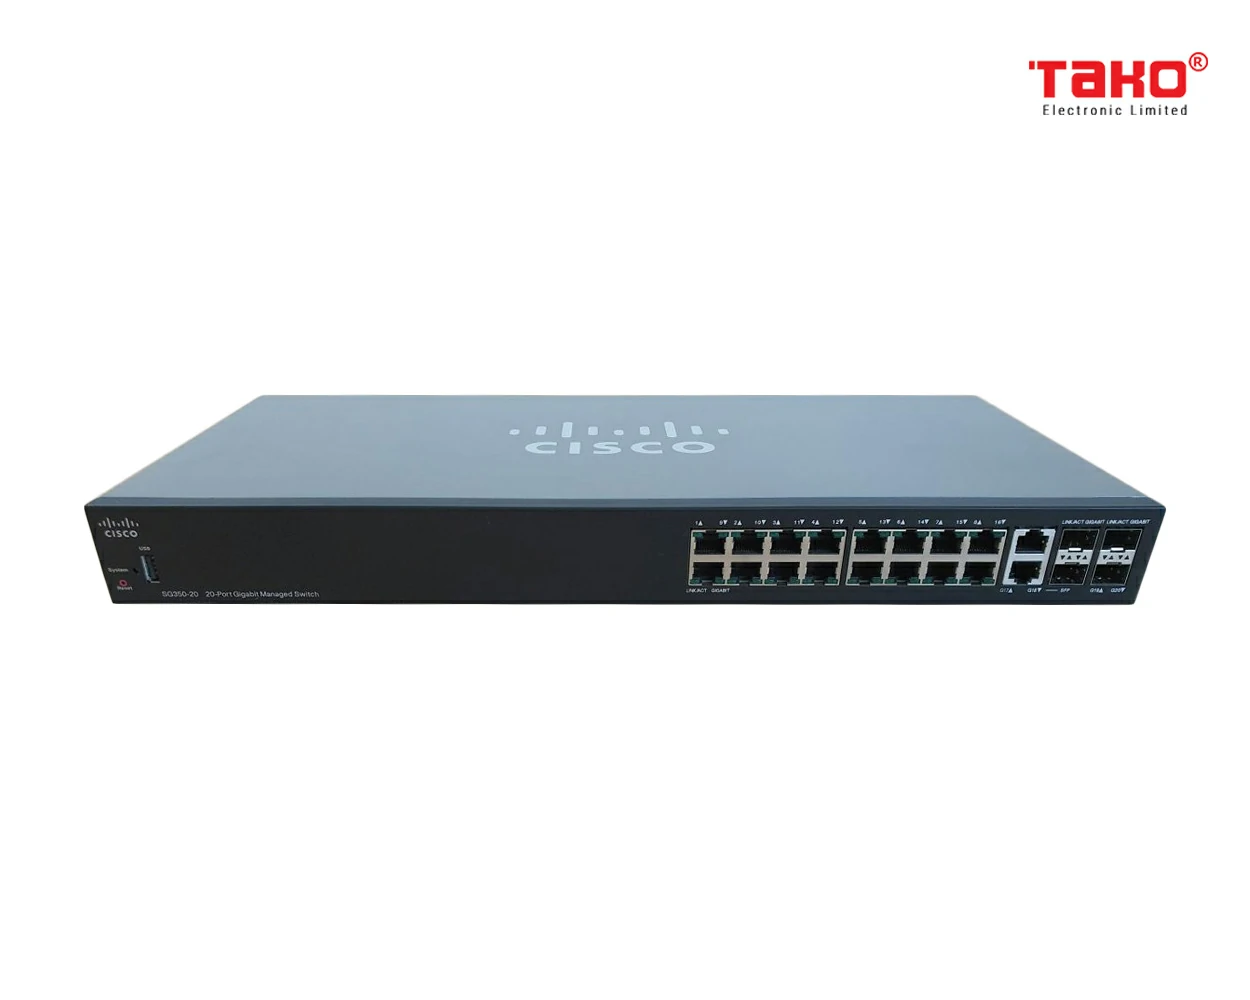 Switch quản lý Cisco SG350-20 với 20 cổng Gigabit Ethernet (GbE) với 16 cổng Gigabit Ethernet RJ45 cộng với combo 2 Gigabit SFP 1